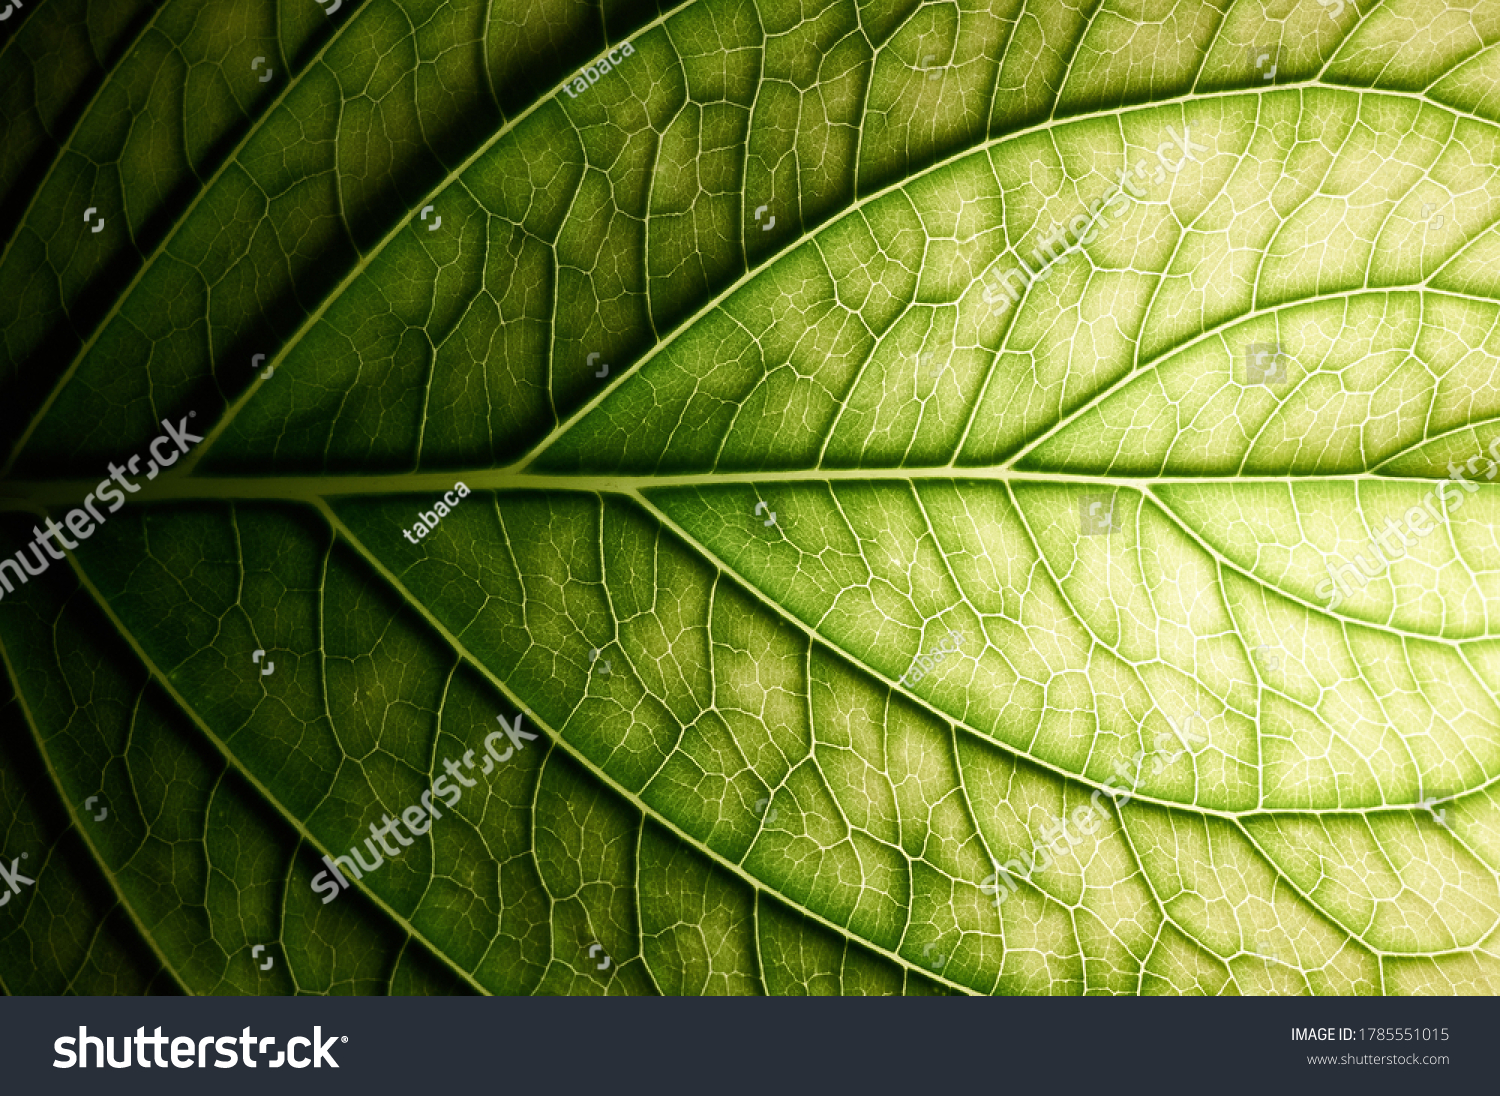 Hydrangea. Vessels of green leaf. #1785551015